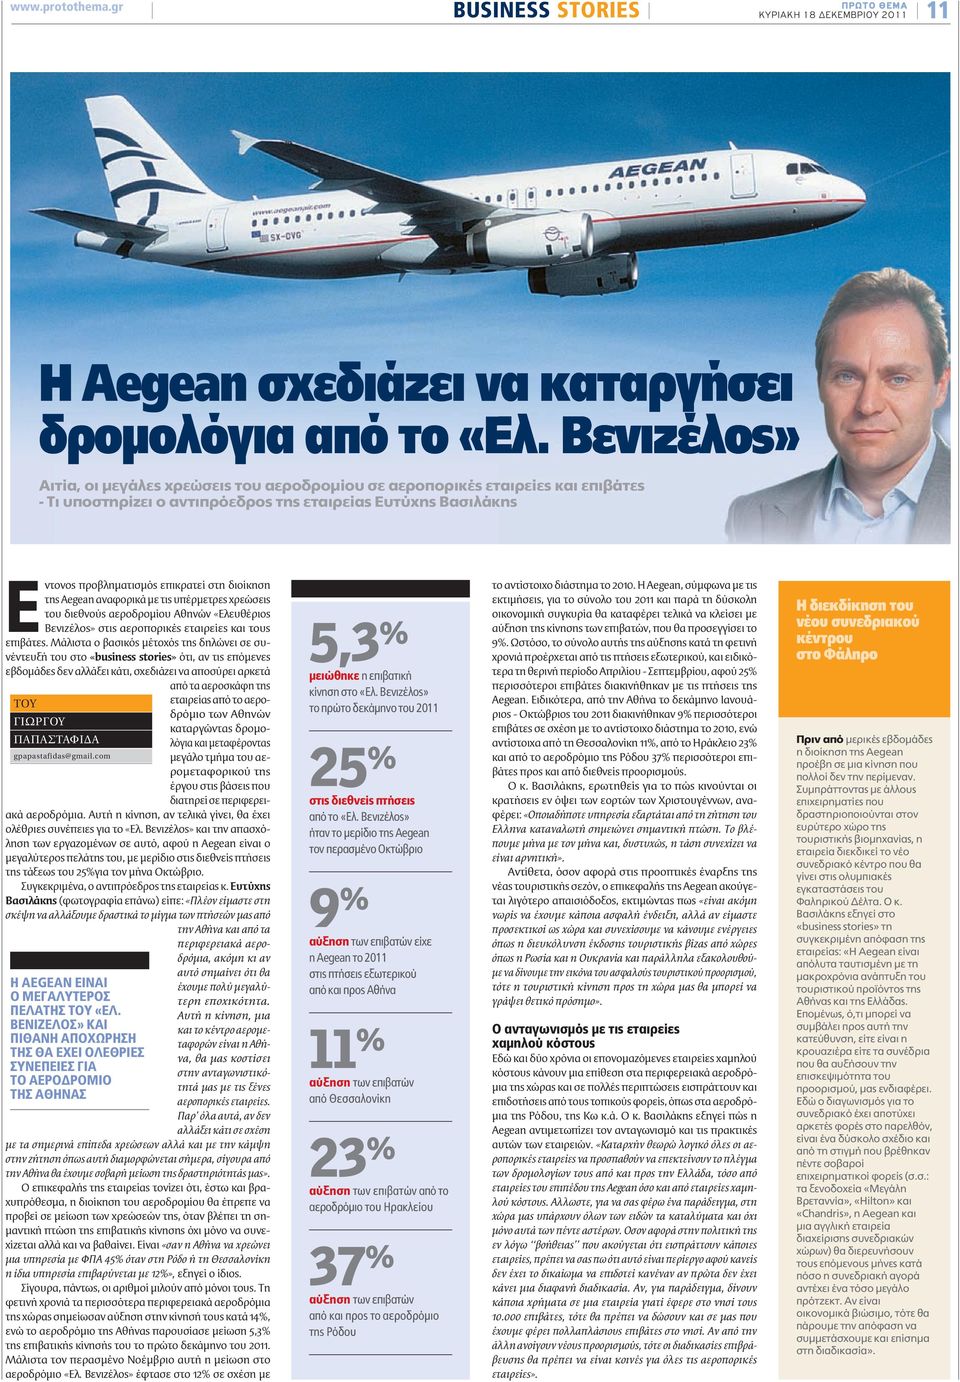 διοίκηση της Aegean αναφορικά με τις υπέρμετρες χρεώσεις του διεθνούς αεροδρομίου Αθηνών «Ελευθέριος Βενιζέλος» στις αεροπορικές εταιρείες και τους επιβάτες.